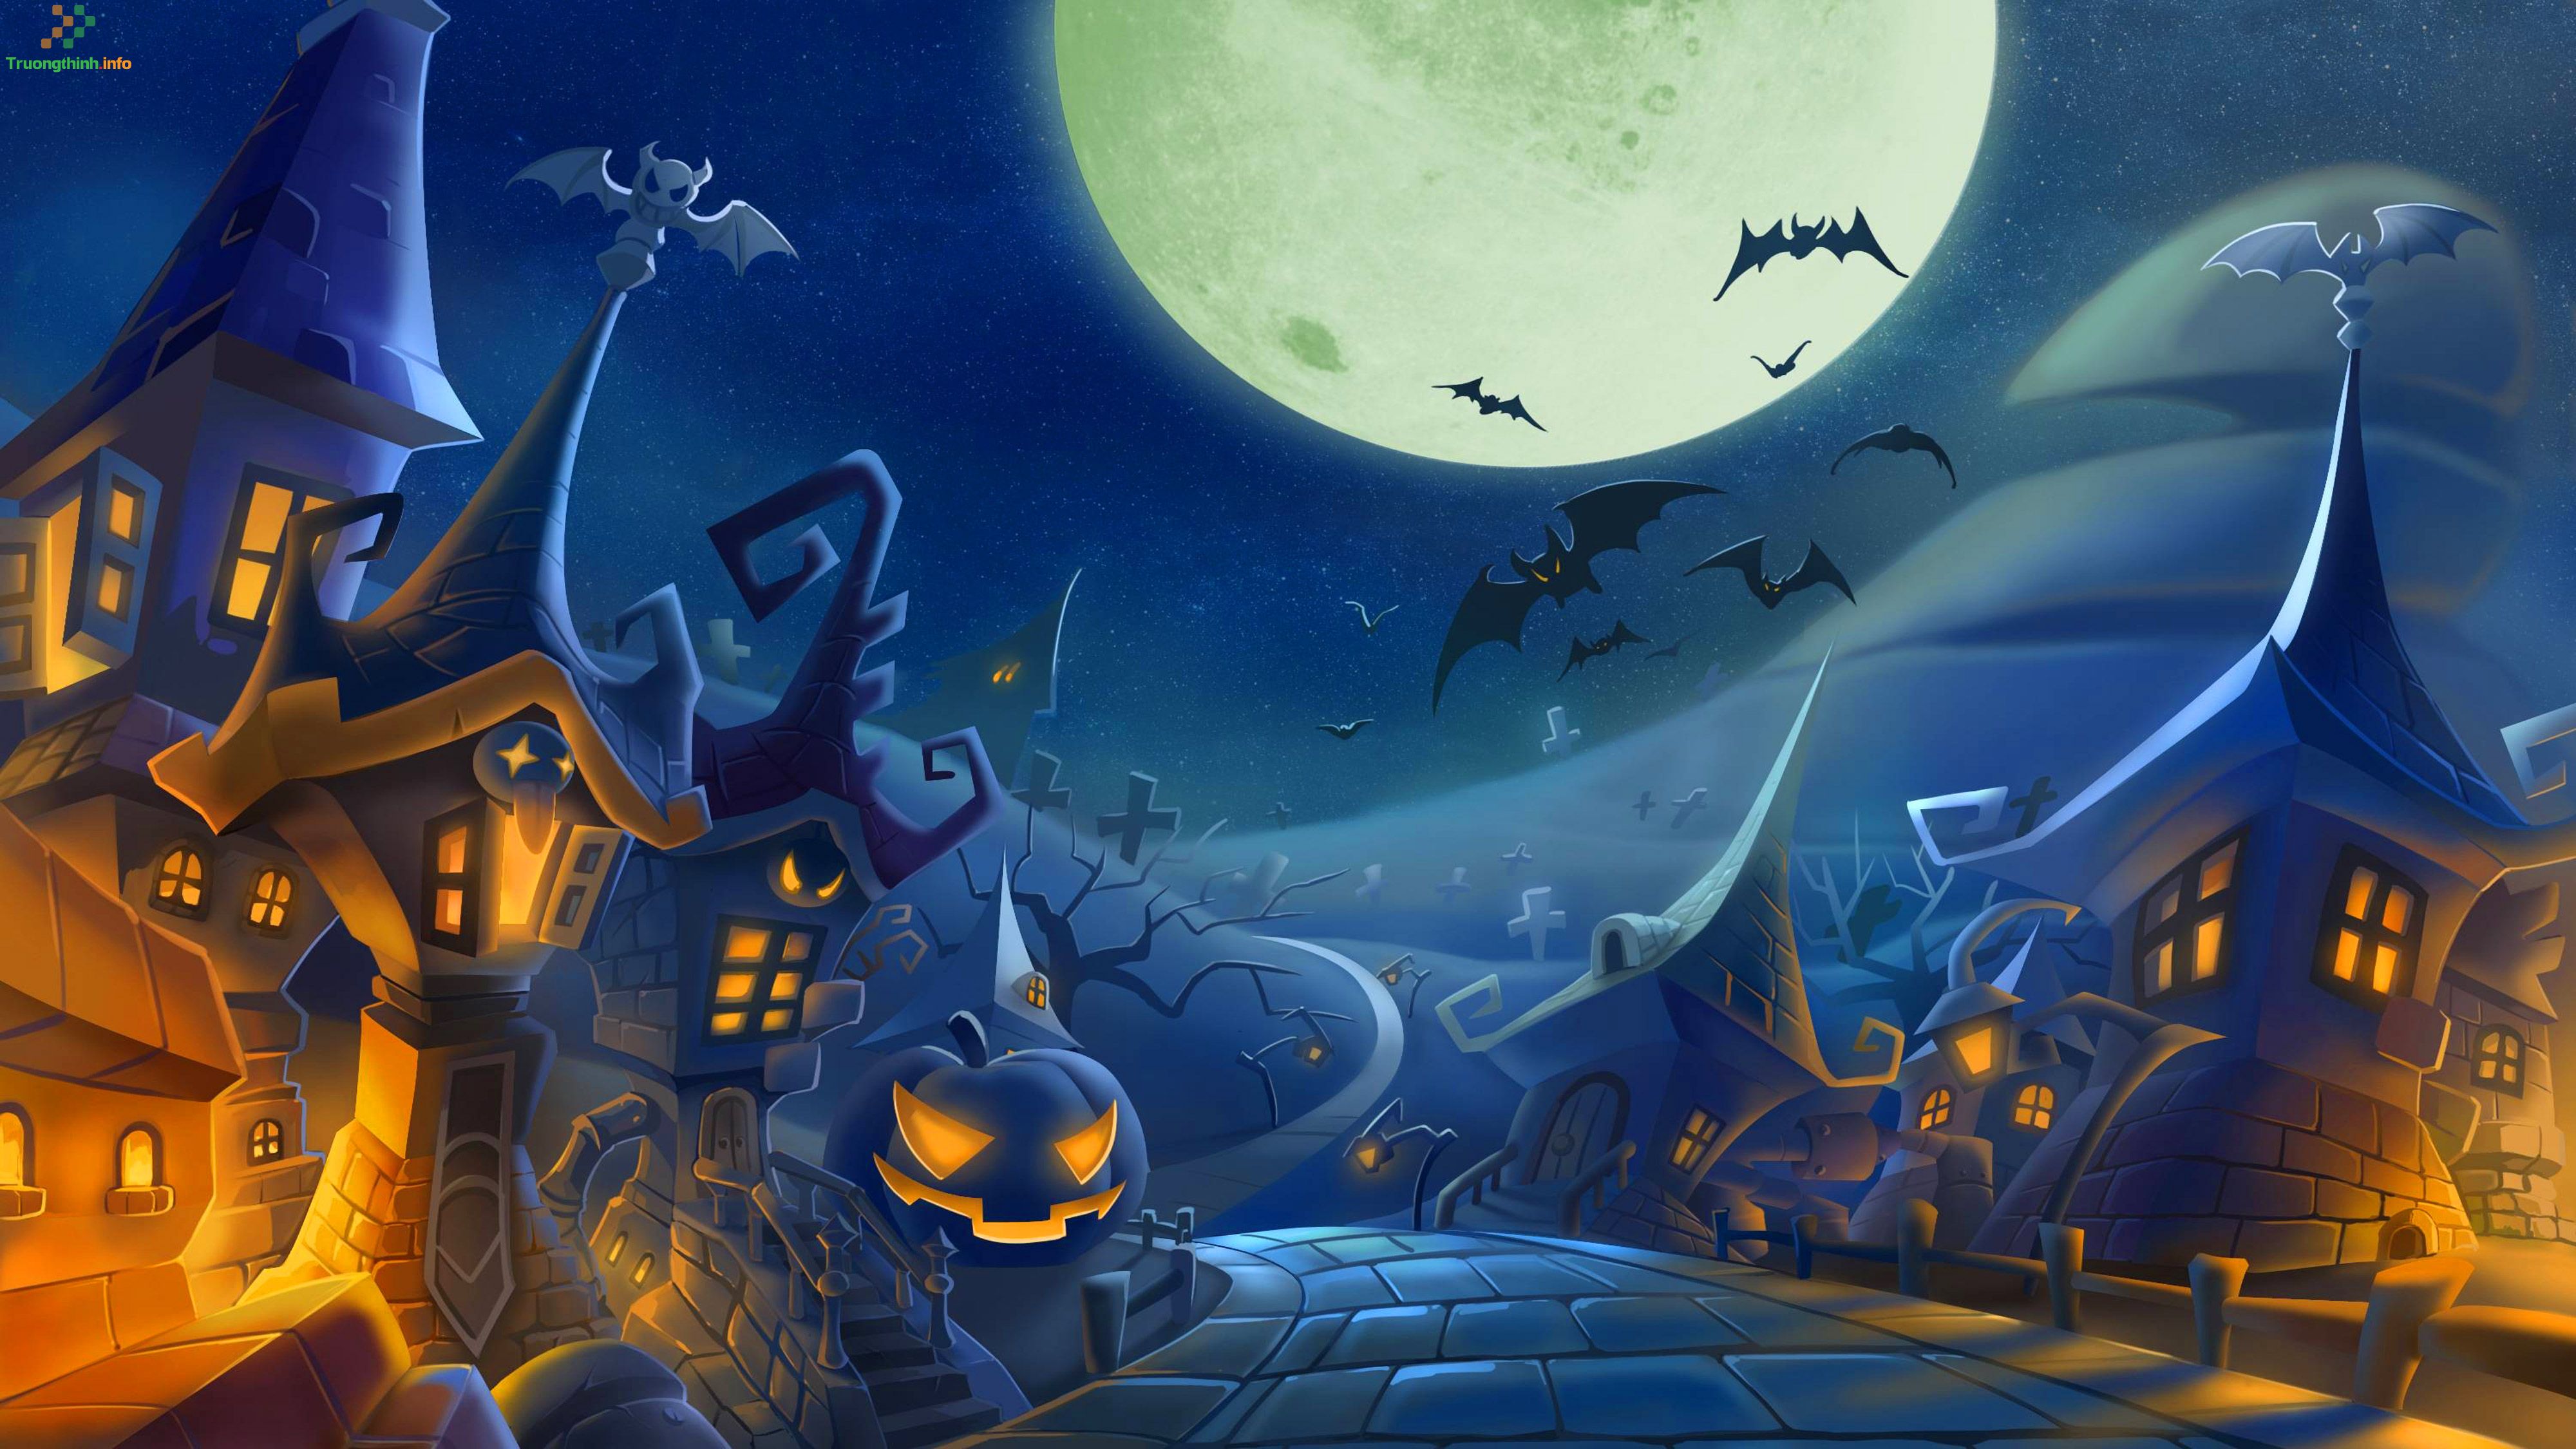 Hãy cùng tạo ra một không khí Halloween huyền bí với những bức tranh tuyệt đẹp nhé! Với những mẫu vẽ tranh Halloween đơn giản mà chúng tôi cung cấp, bạn sẽ dễ dàng tạo ra những hình ảnh độc đáo và vui mắt để trang trí nhà cửa cho mùa lễ hội sắp tới.